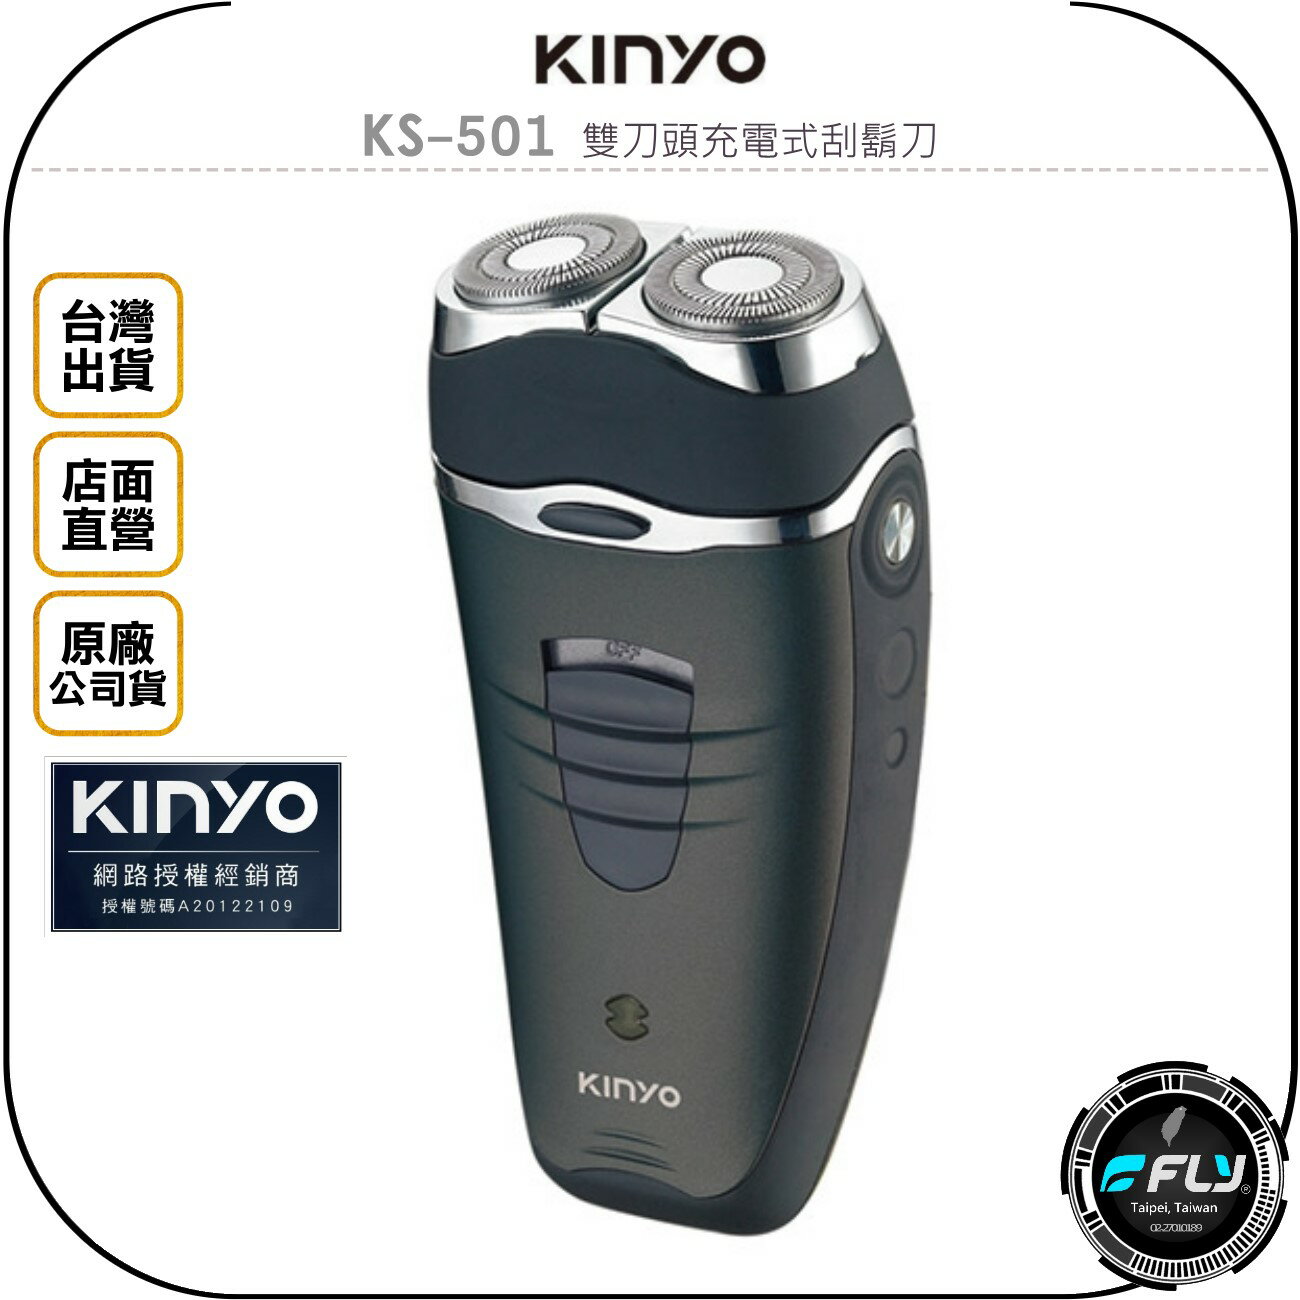 《飛翔無線3C》KINYO 耐嘉 KS-501 雙刀頭充電式刮鬍刀◉公司貨◉浮動刀頭◉USB充電◉時尚機身